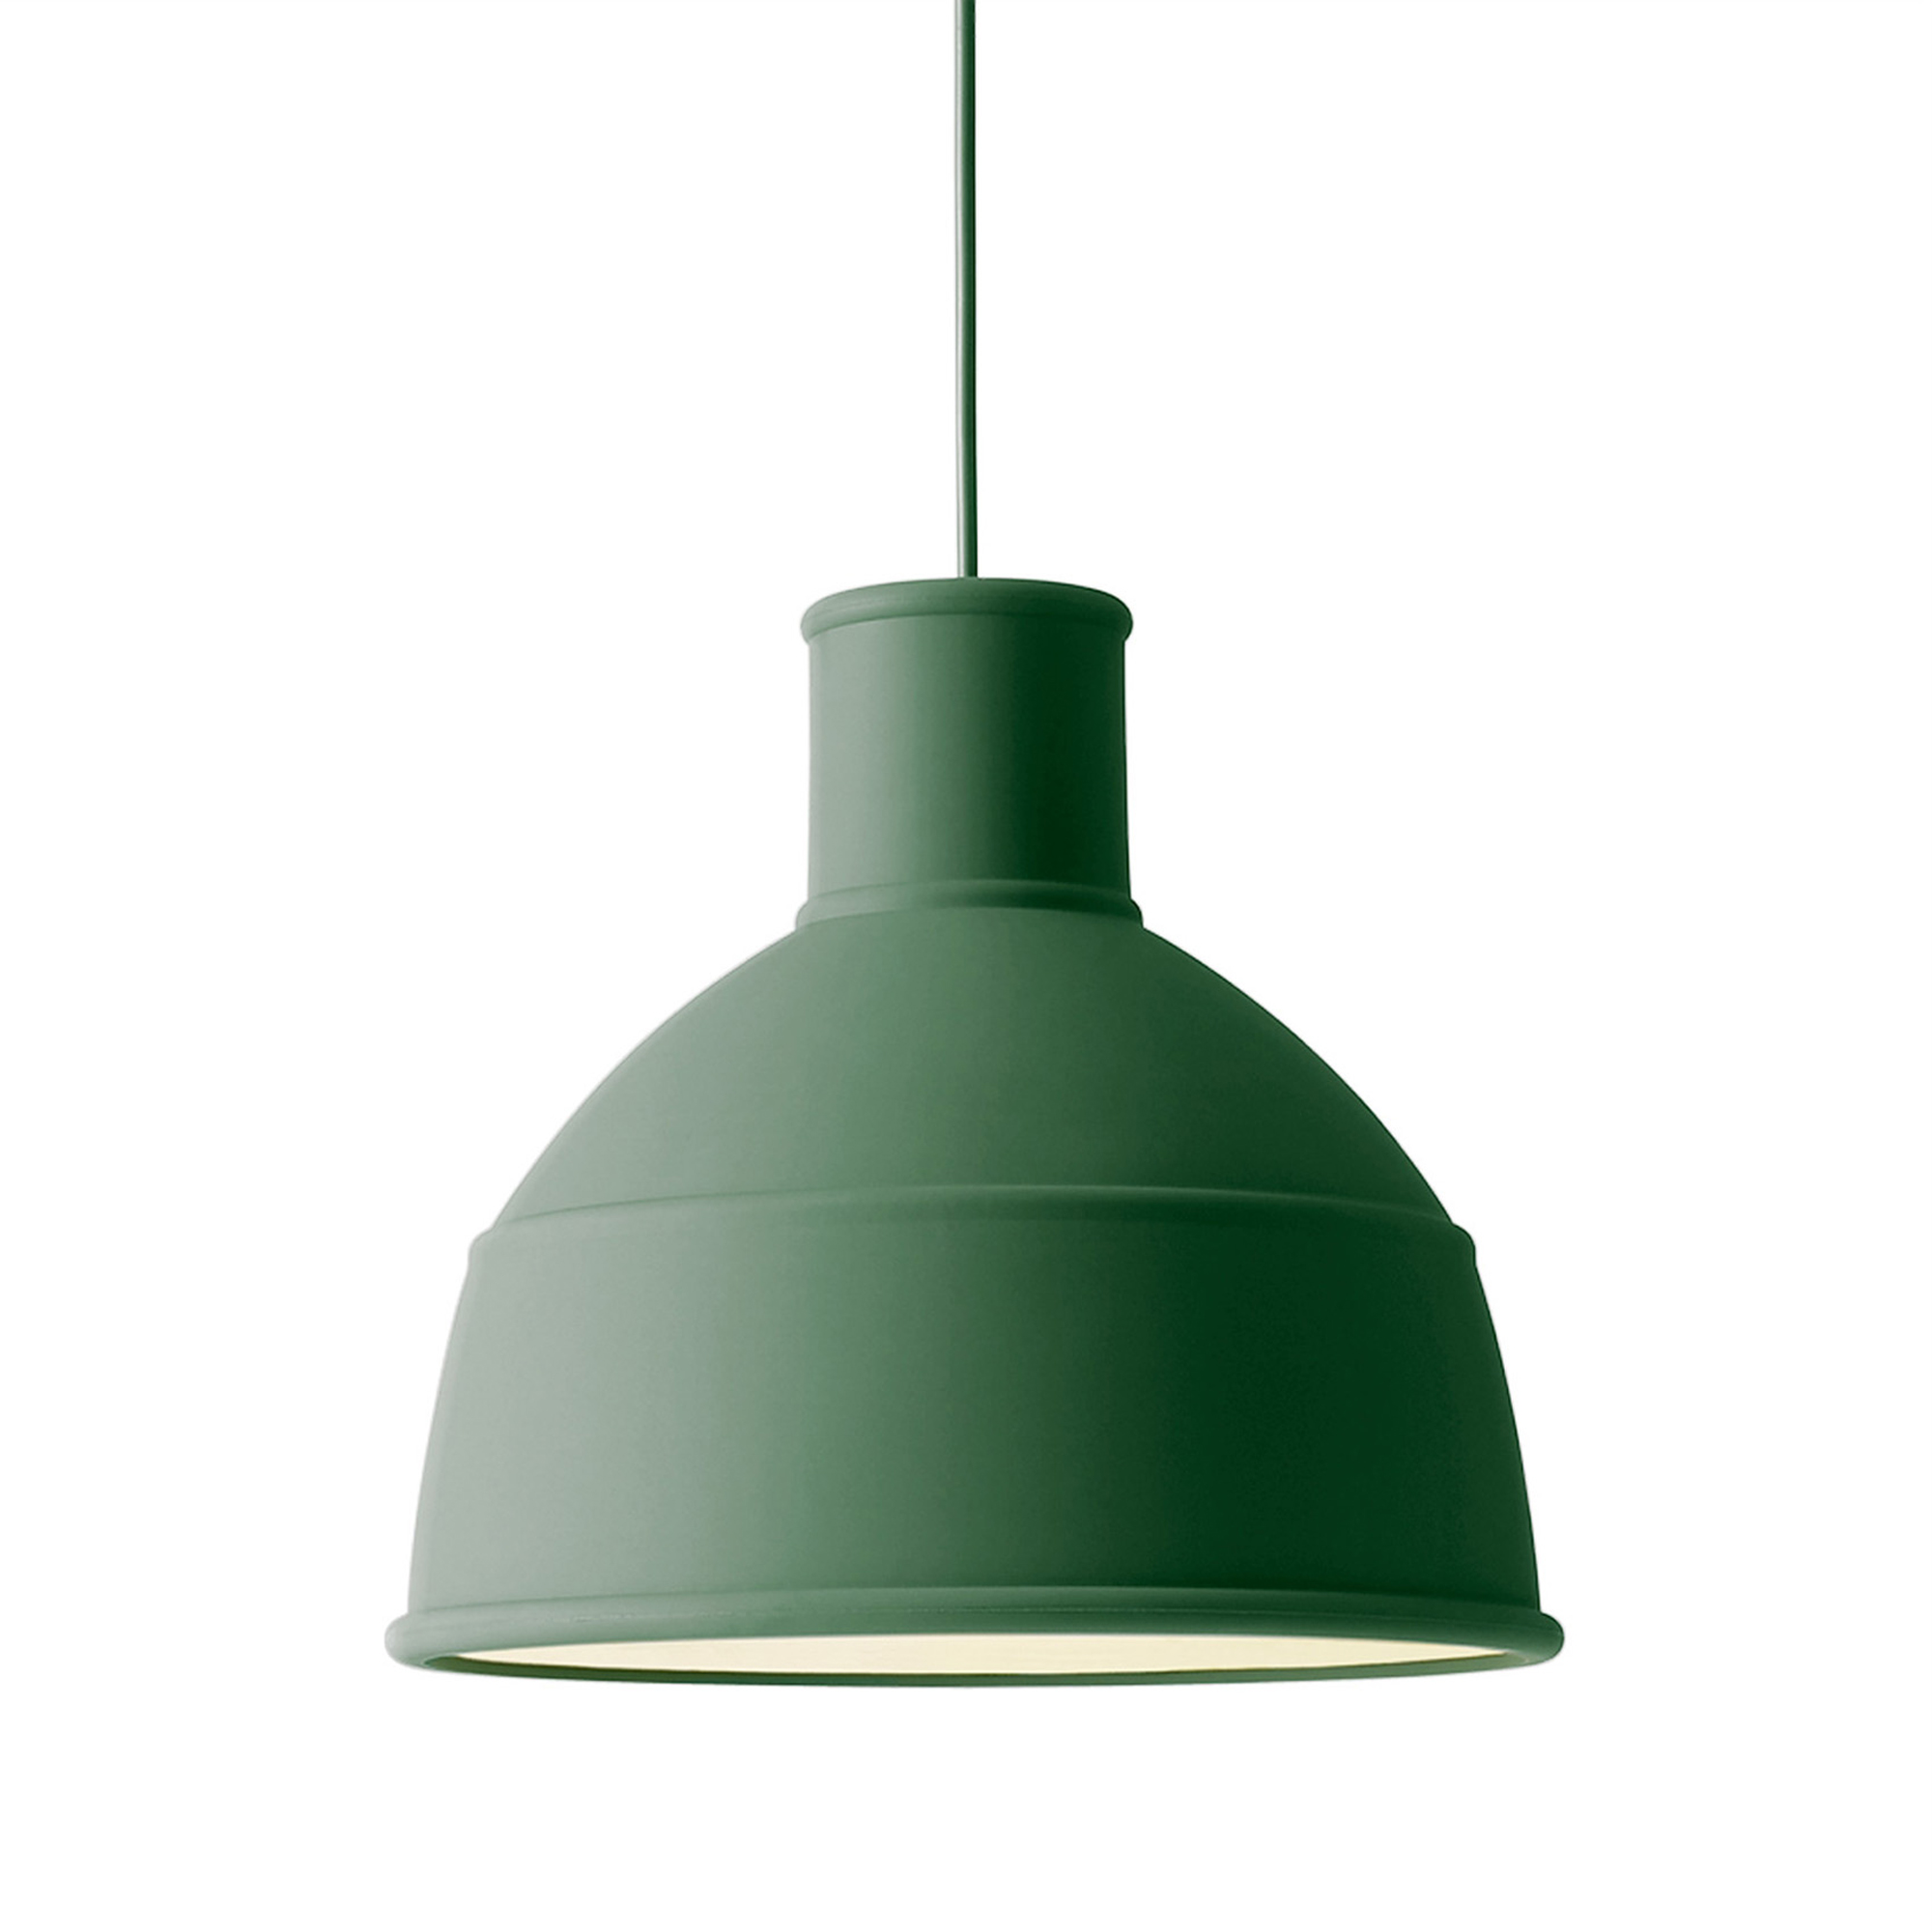 Lampa Unfold grönproduktzoombild #1